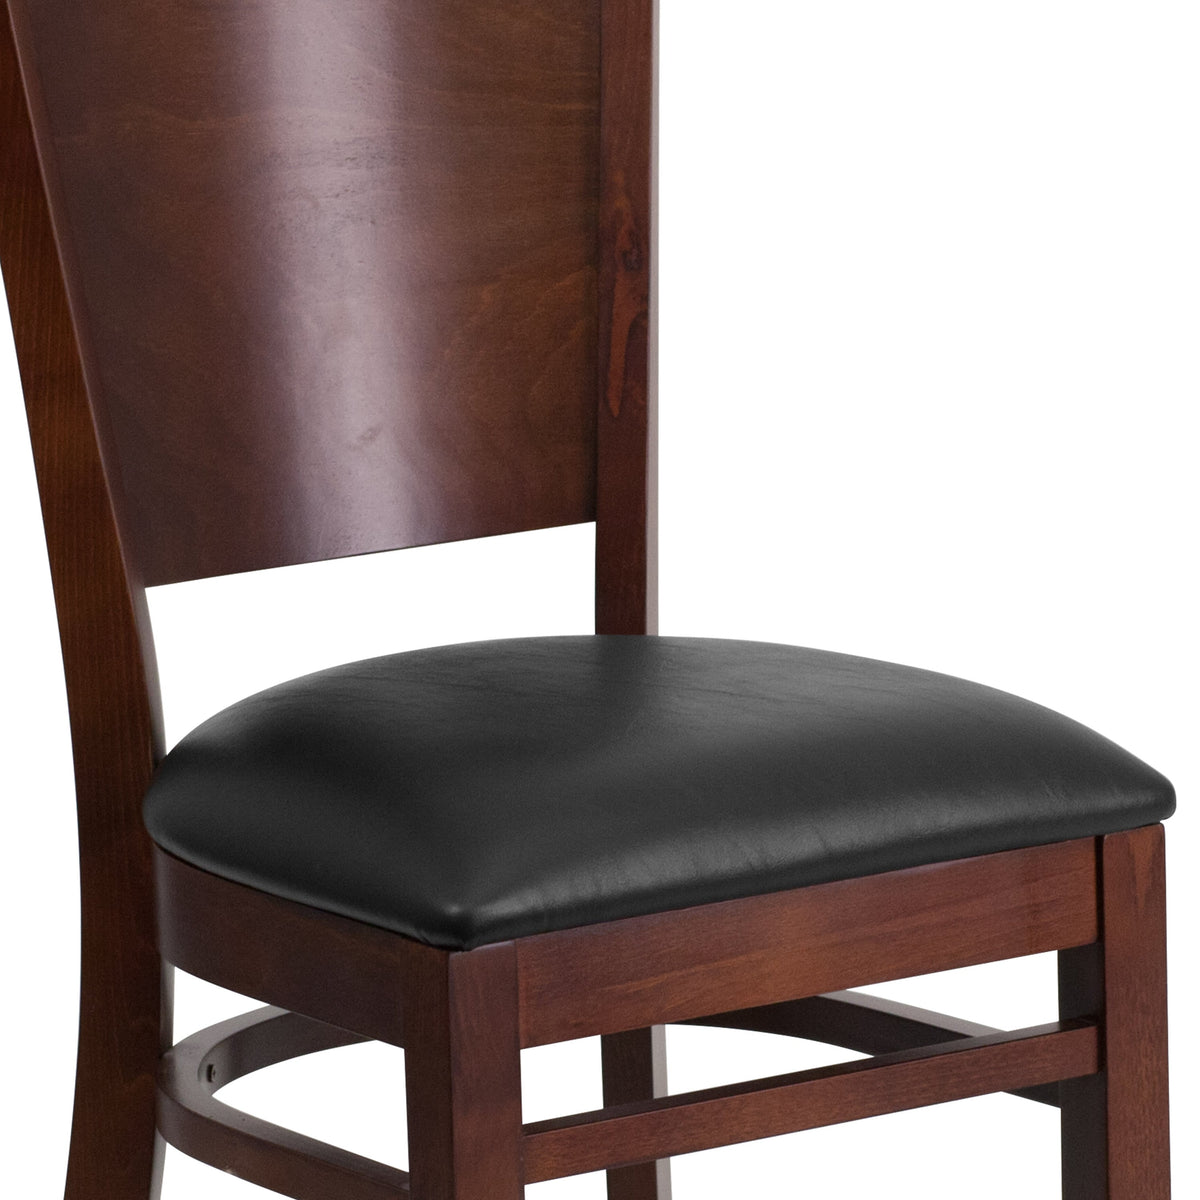 Black Vinyl Seat/Walnut Wood Frame |#| Solid Back Walnut Wood Restaurant Chair - Black Vinyl Seat